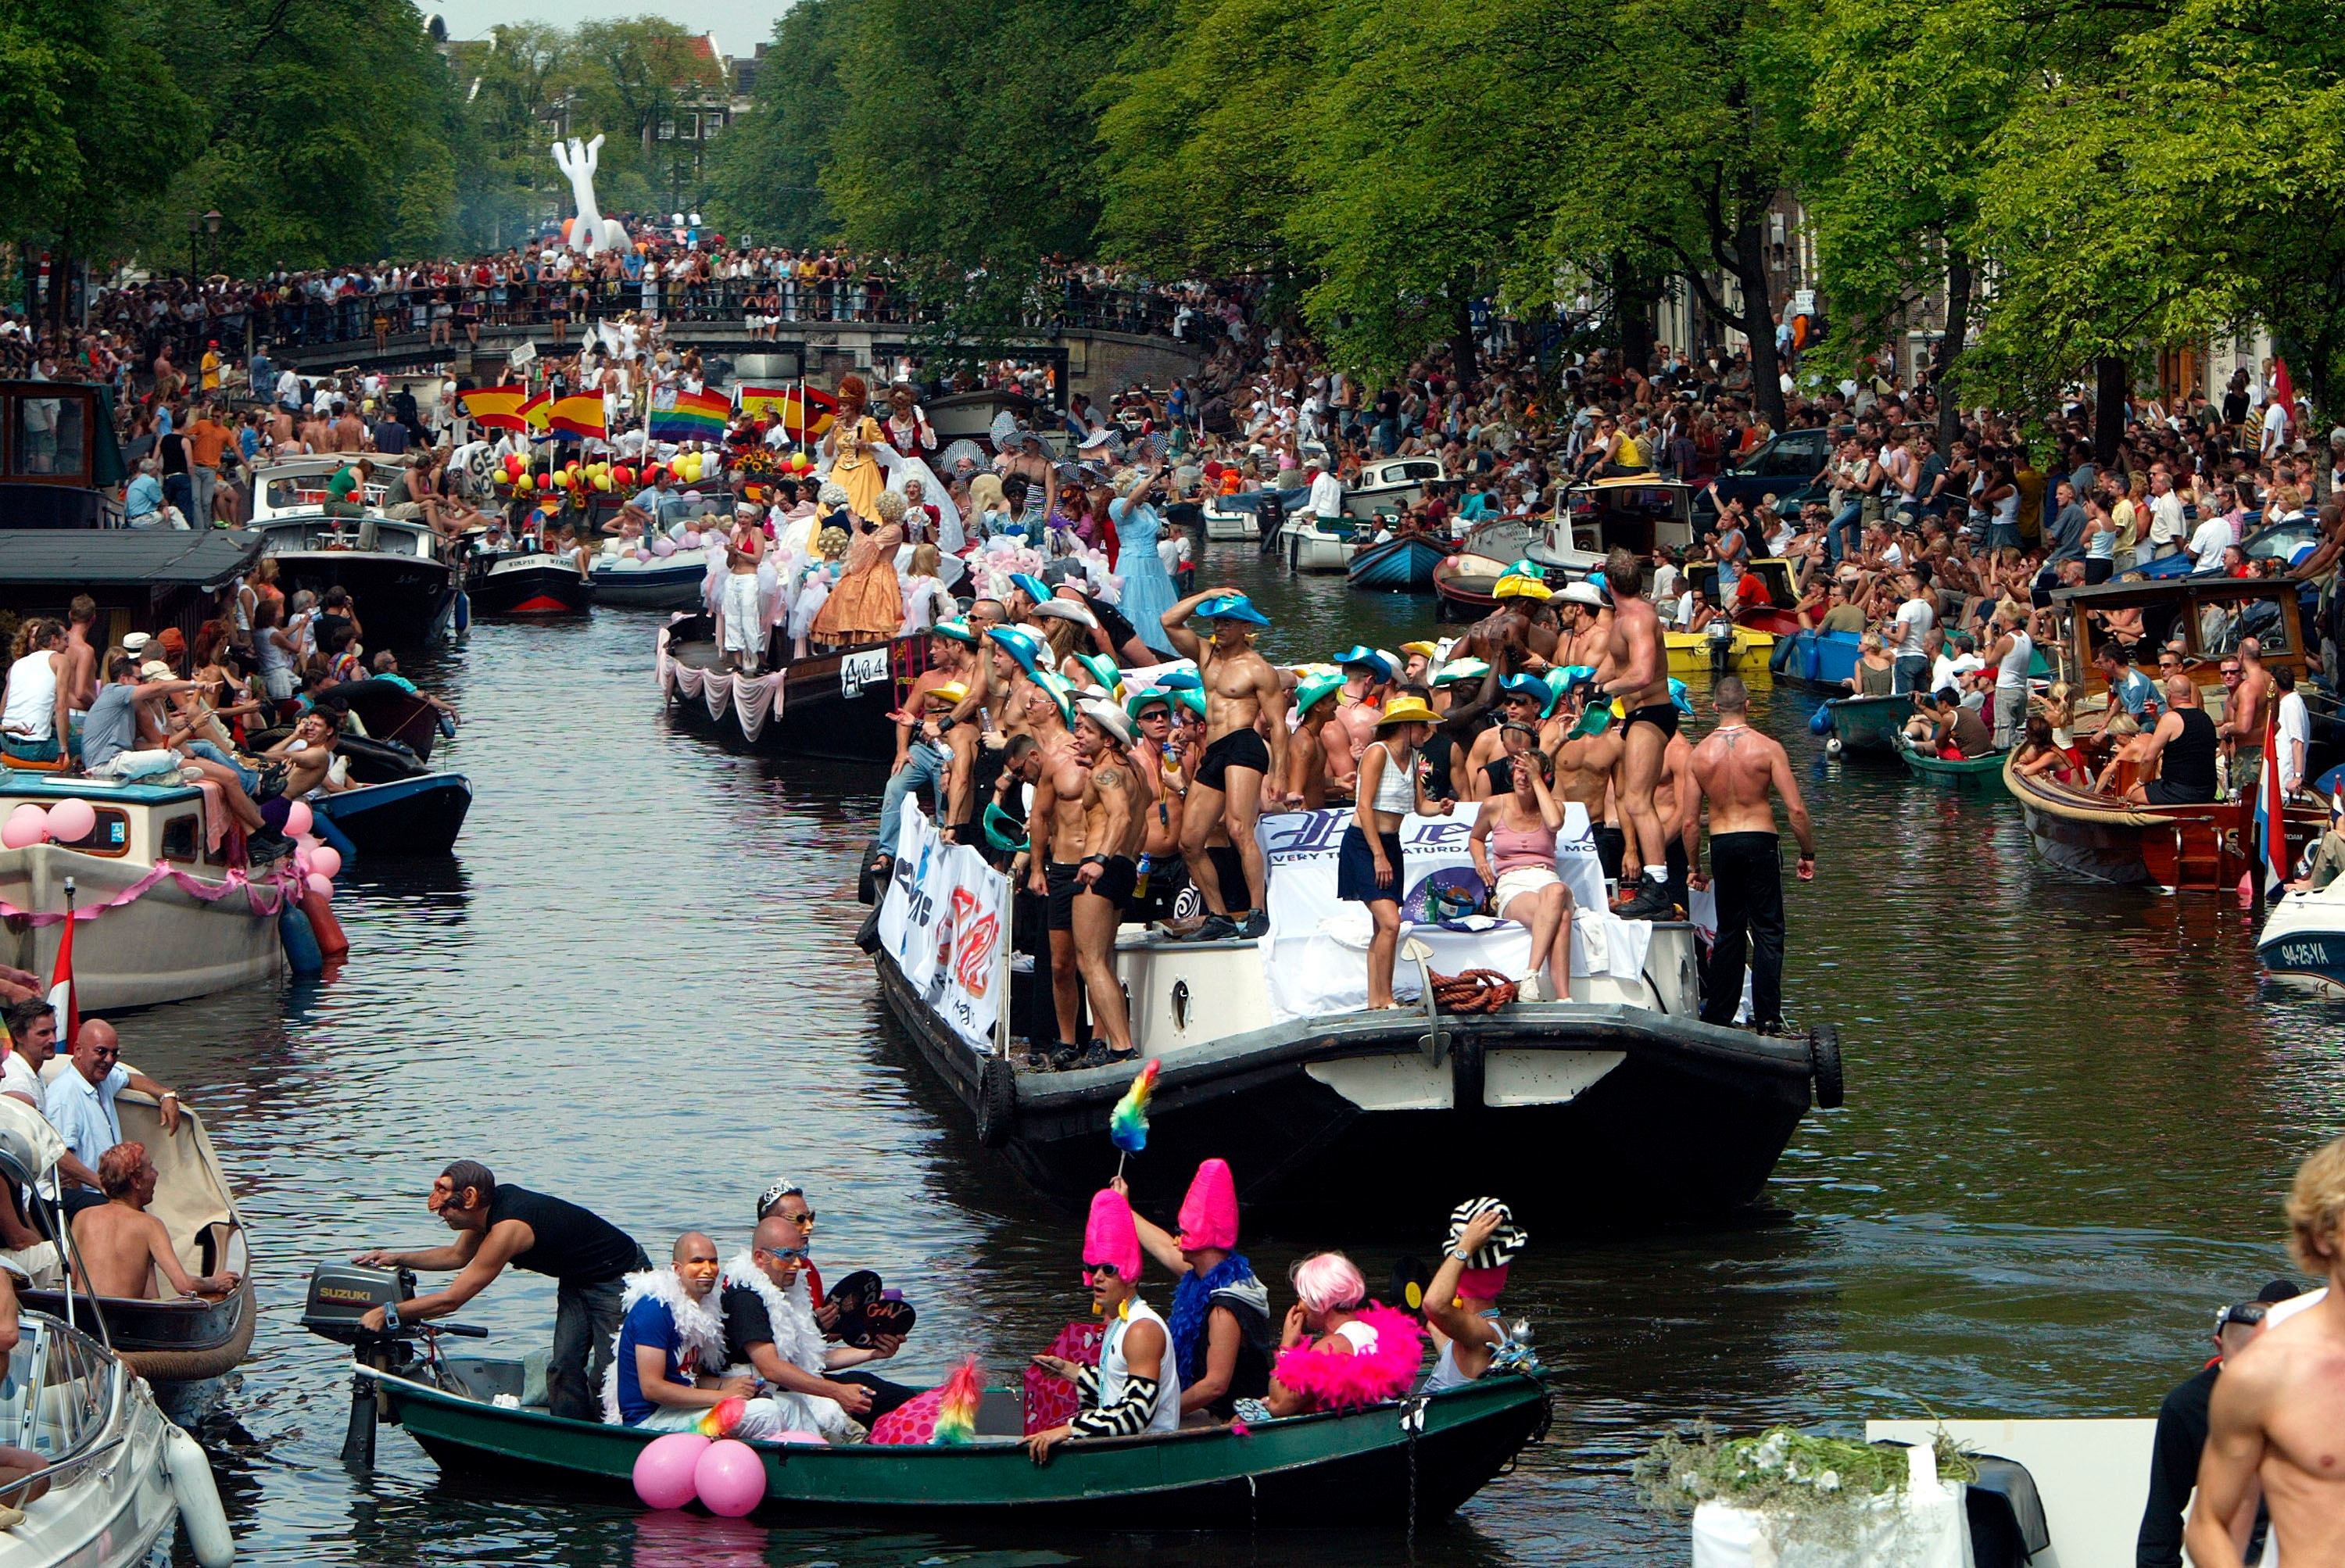 Jewish Boat Making Waves Ahead Of Amsterdam Gay Parade